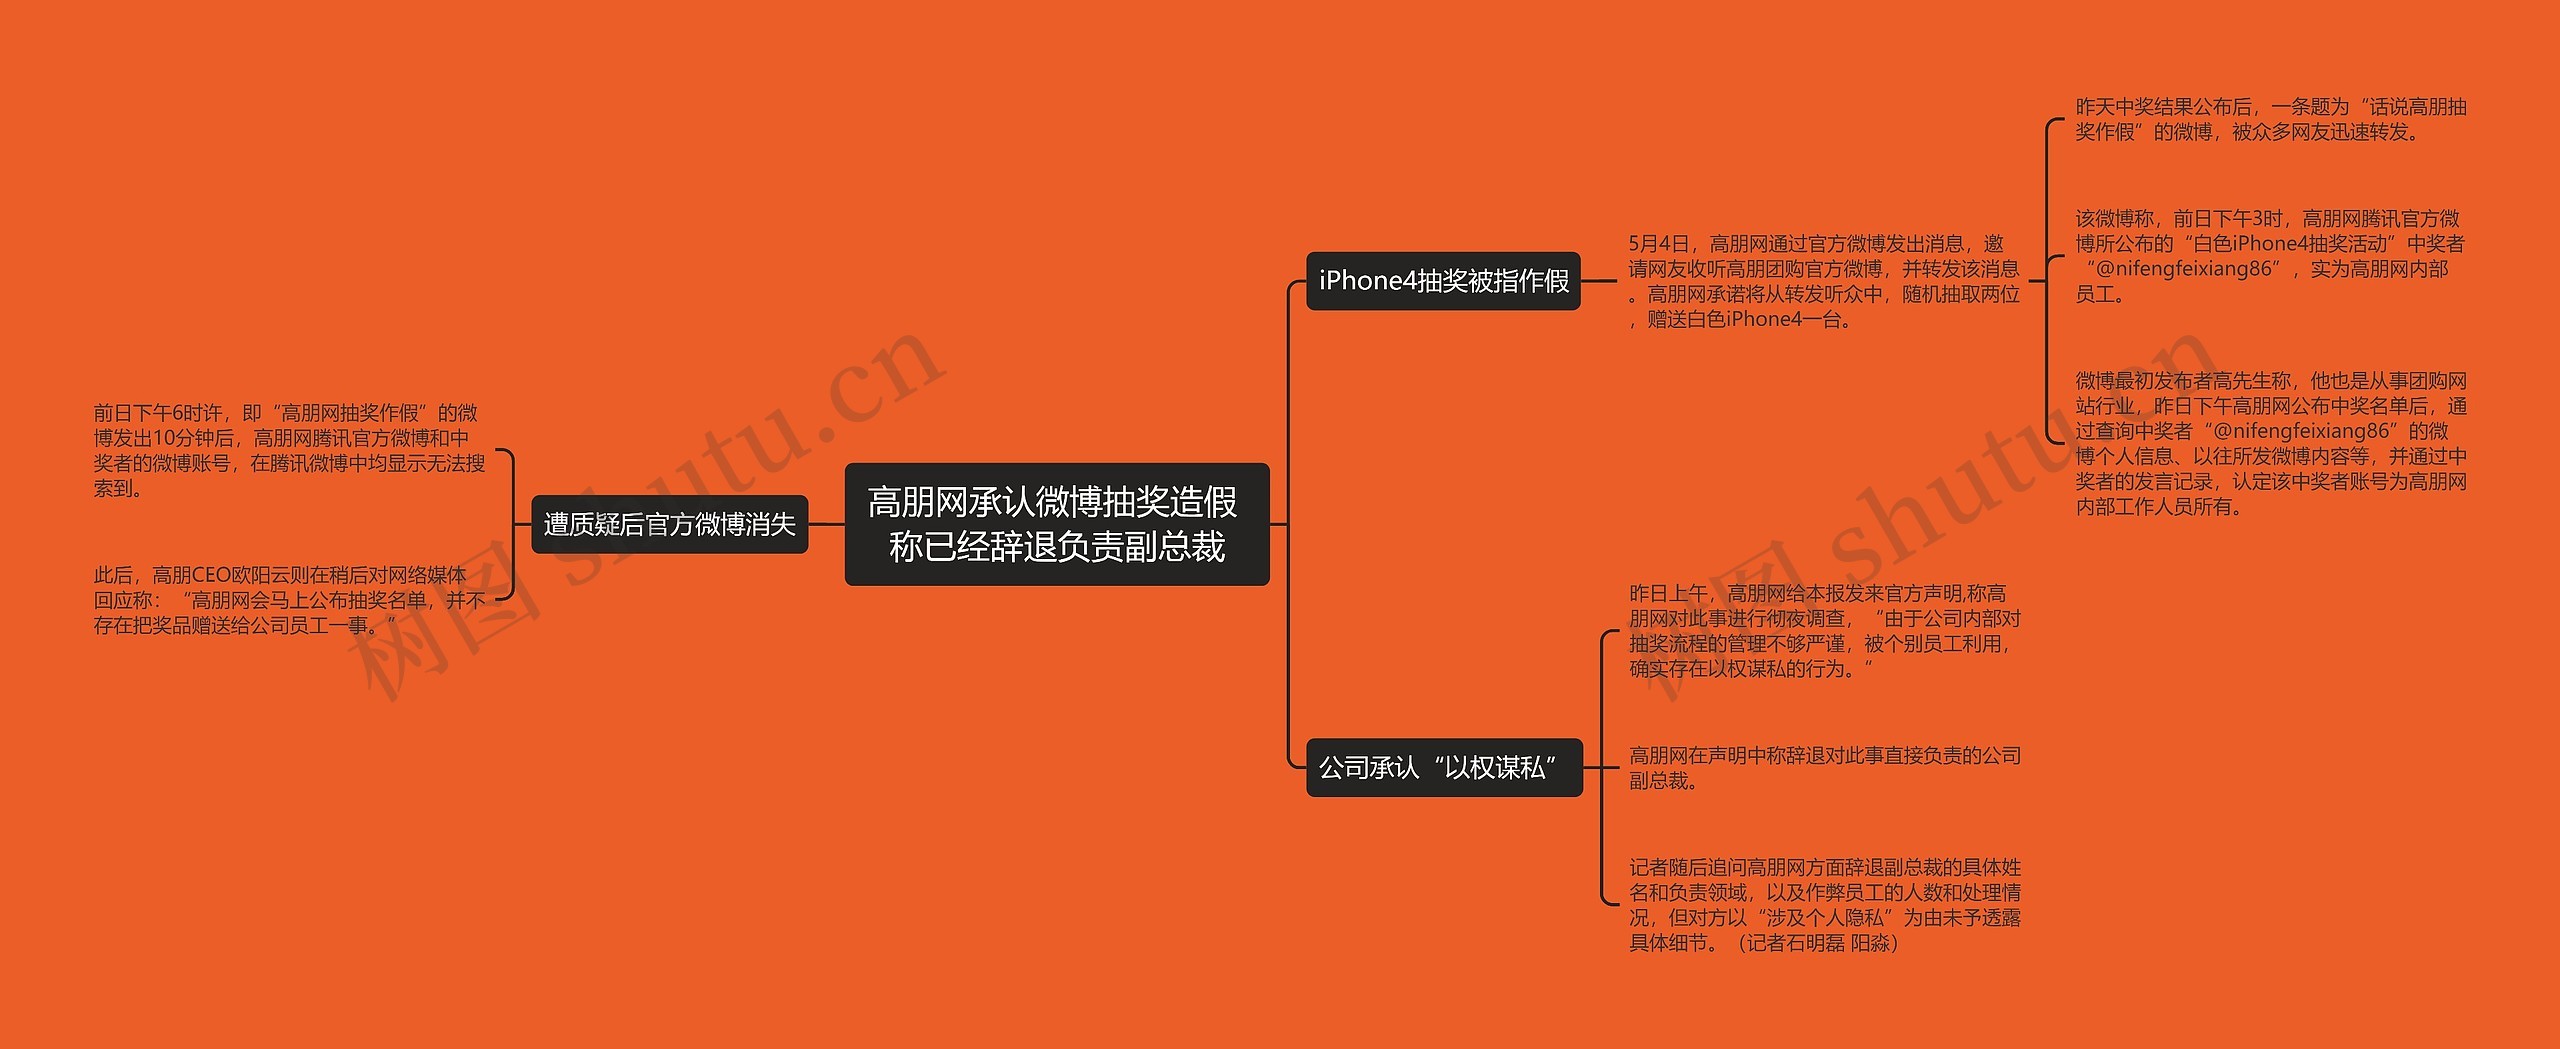 高朋网承认微博抽奖造假 称已经辞退负责副总裁思维导图